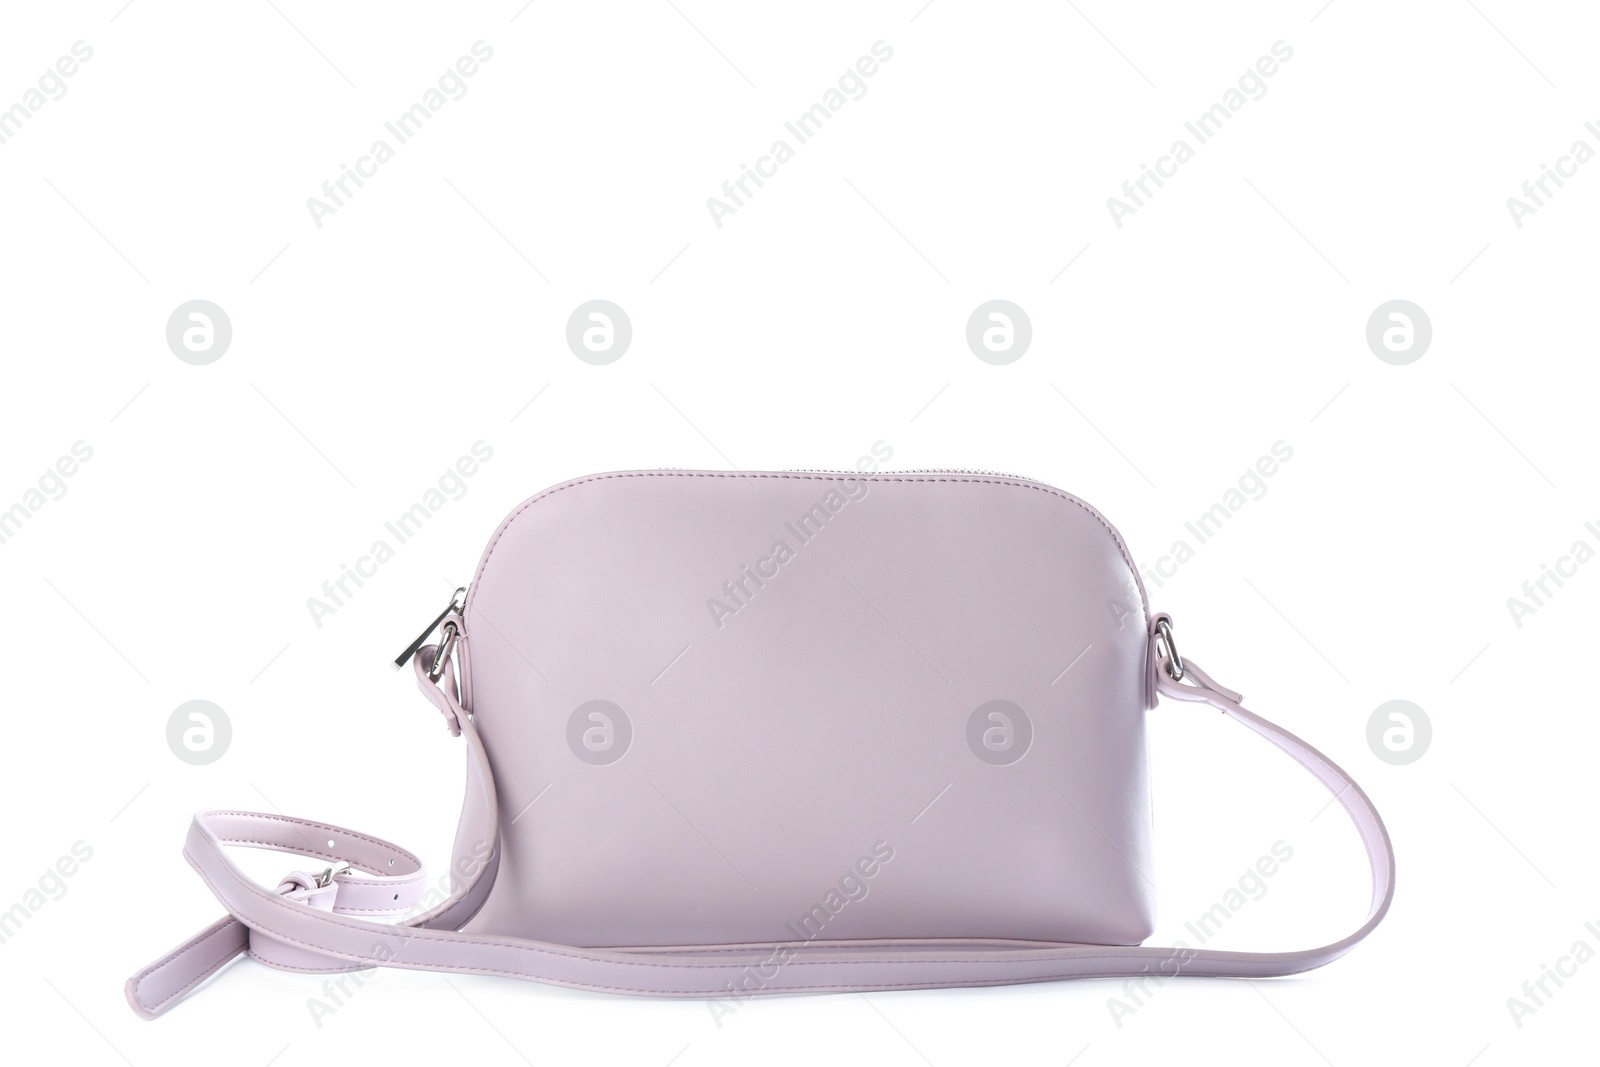 Photo of Stylish pink leather bag isolated on white